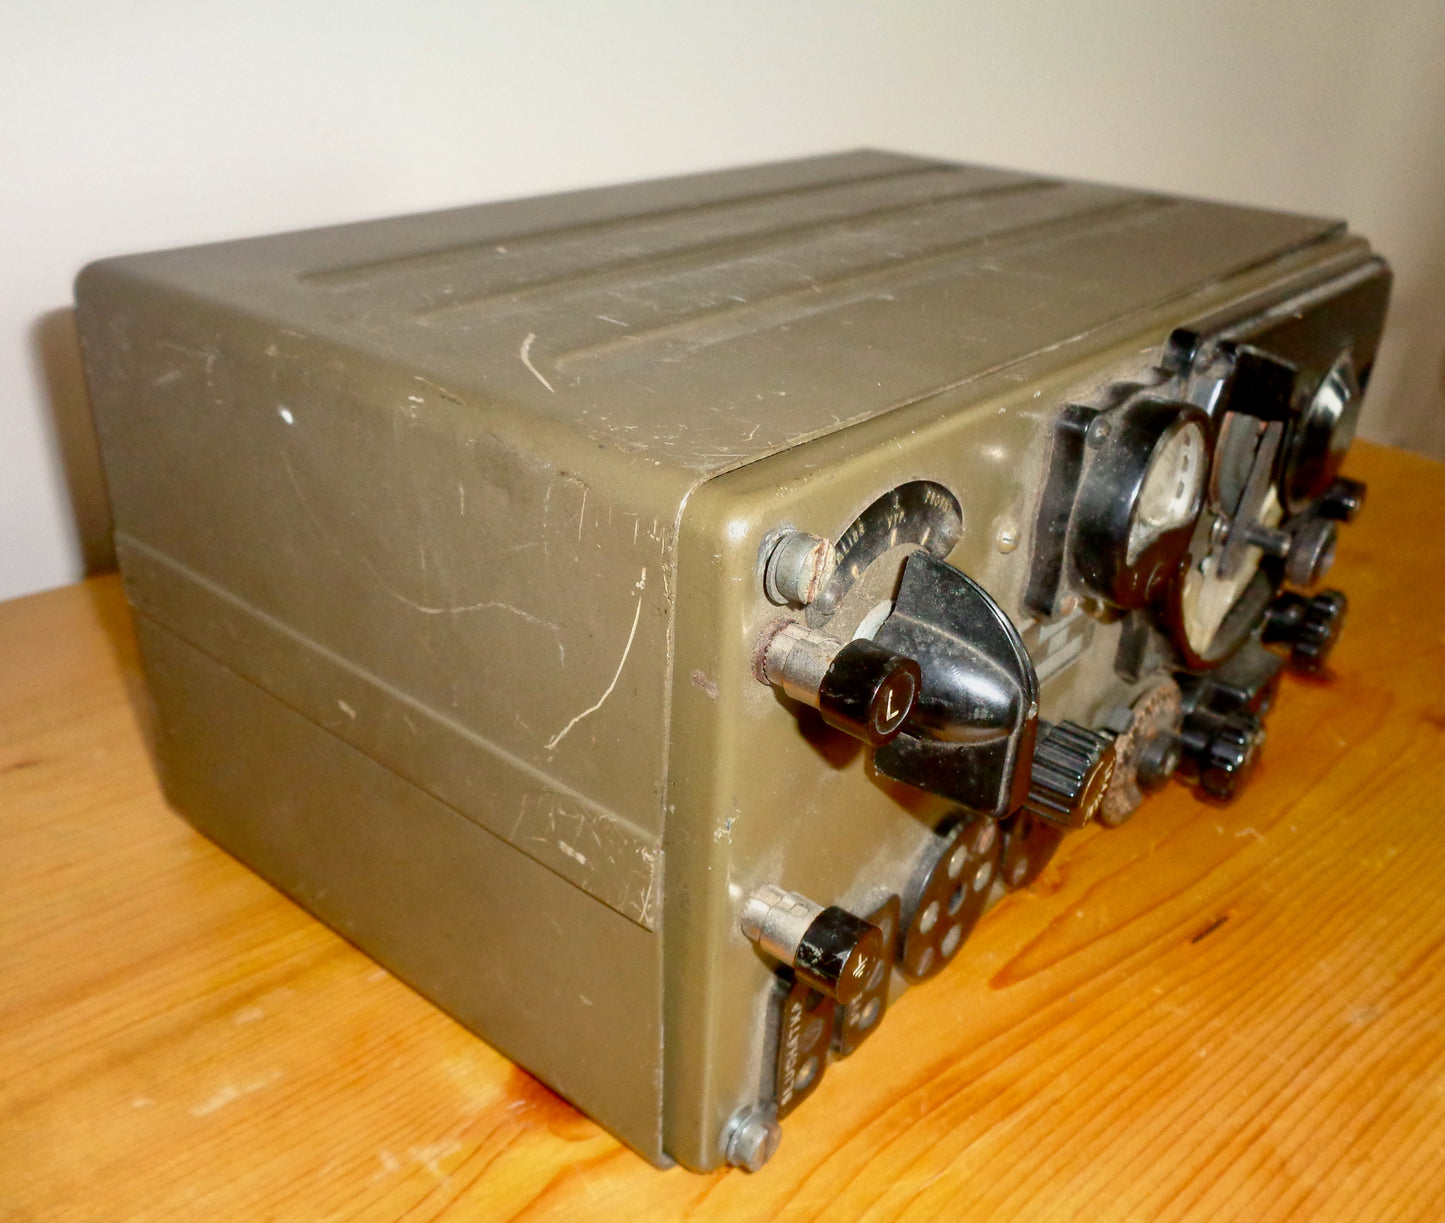 1950s A7B Czech Military Man Pack Valve Transceiver